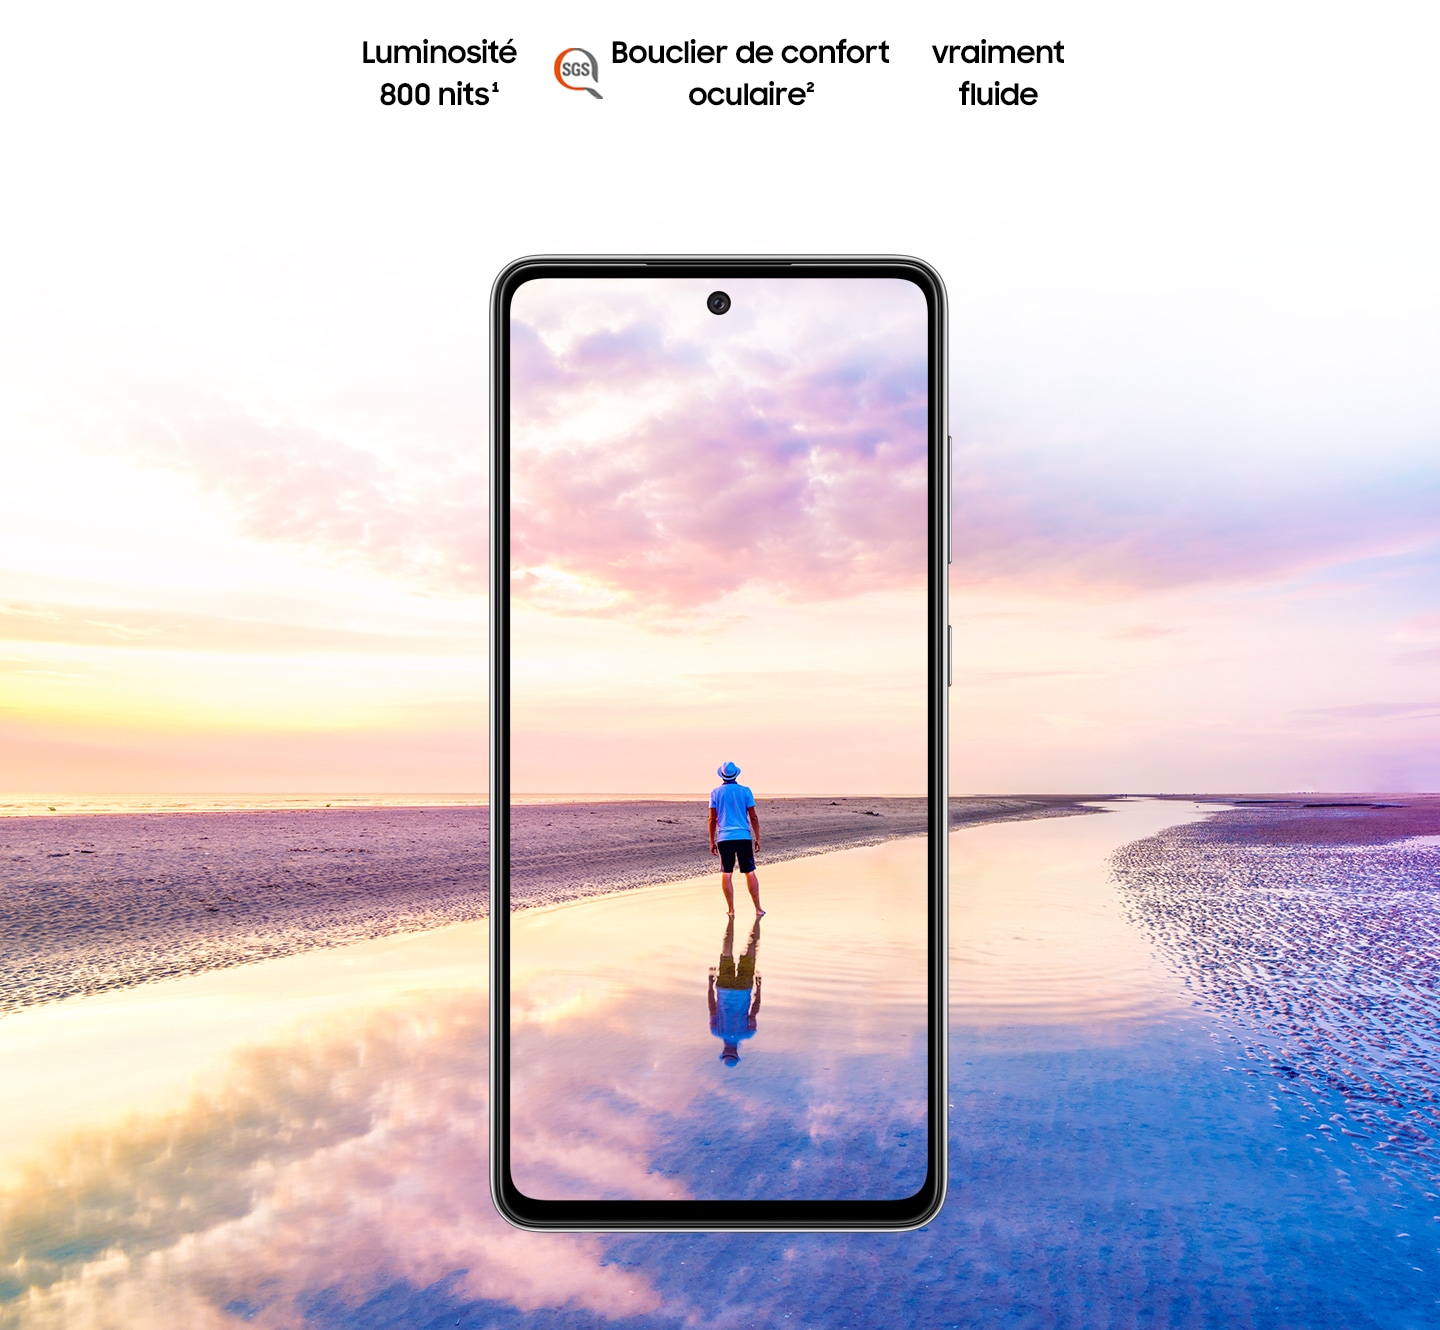 Galaxy A52 vu de face. La scène d’un homme debout sur une plage au coucher du soleil avec des couleurs roses et bleues dans le ciel s’étend hors des limites de l’écran. Le texte indique Luminosité 800 nits, Eye Comfort Shield, avec le logo SGS et Real Smooth.